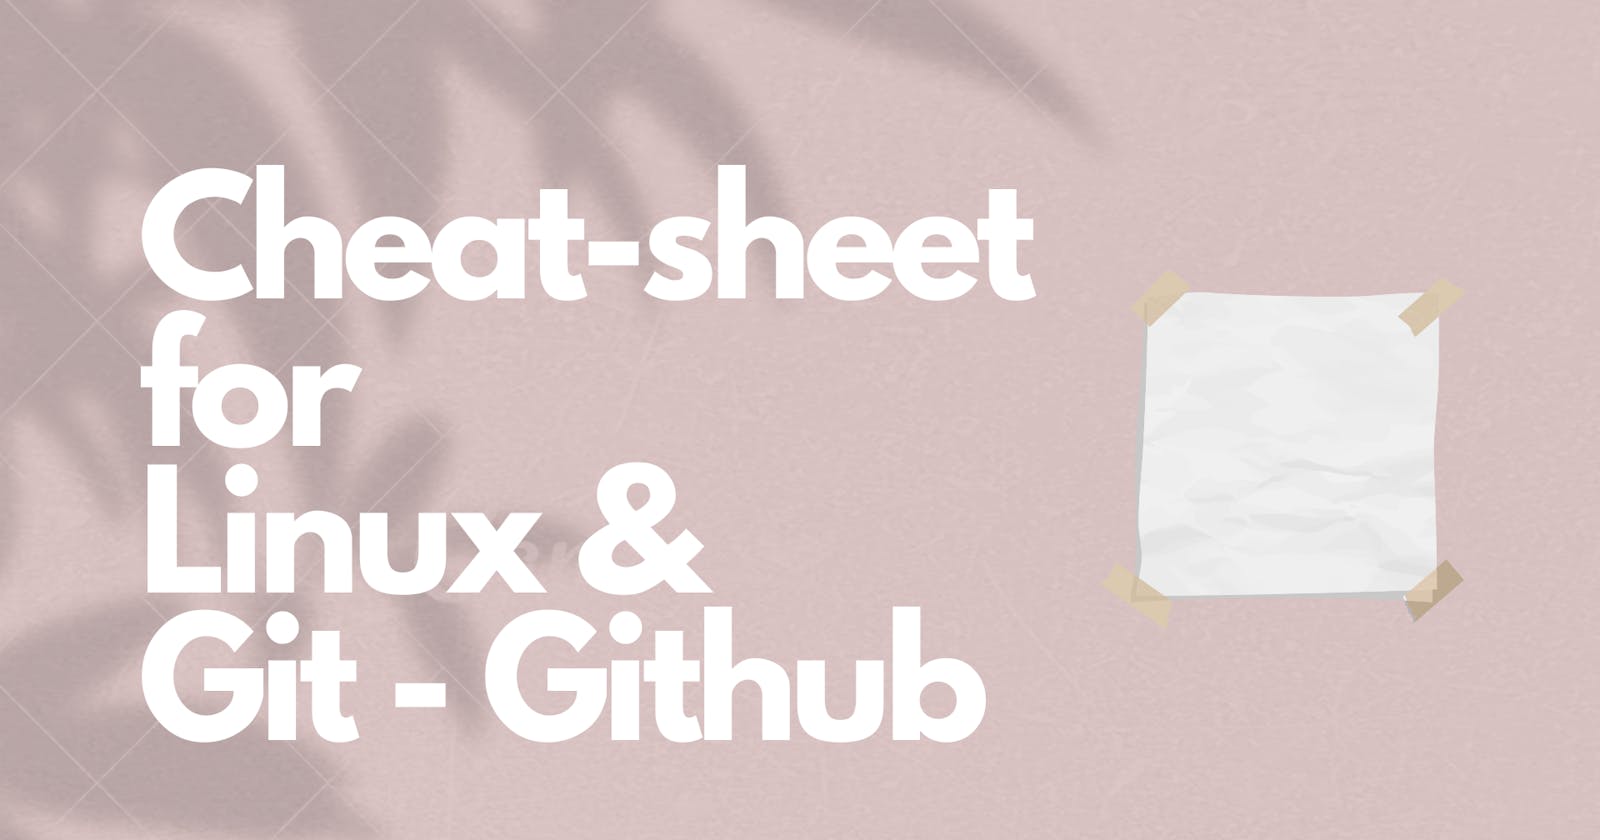 Cheat-sheet for Linux & Git-GitHub